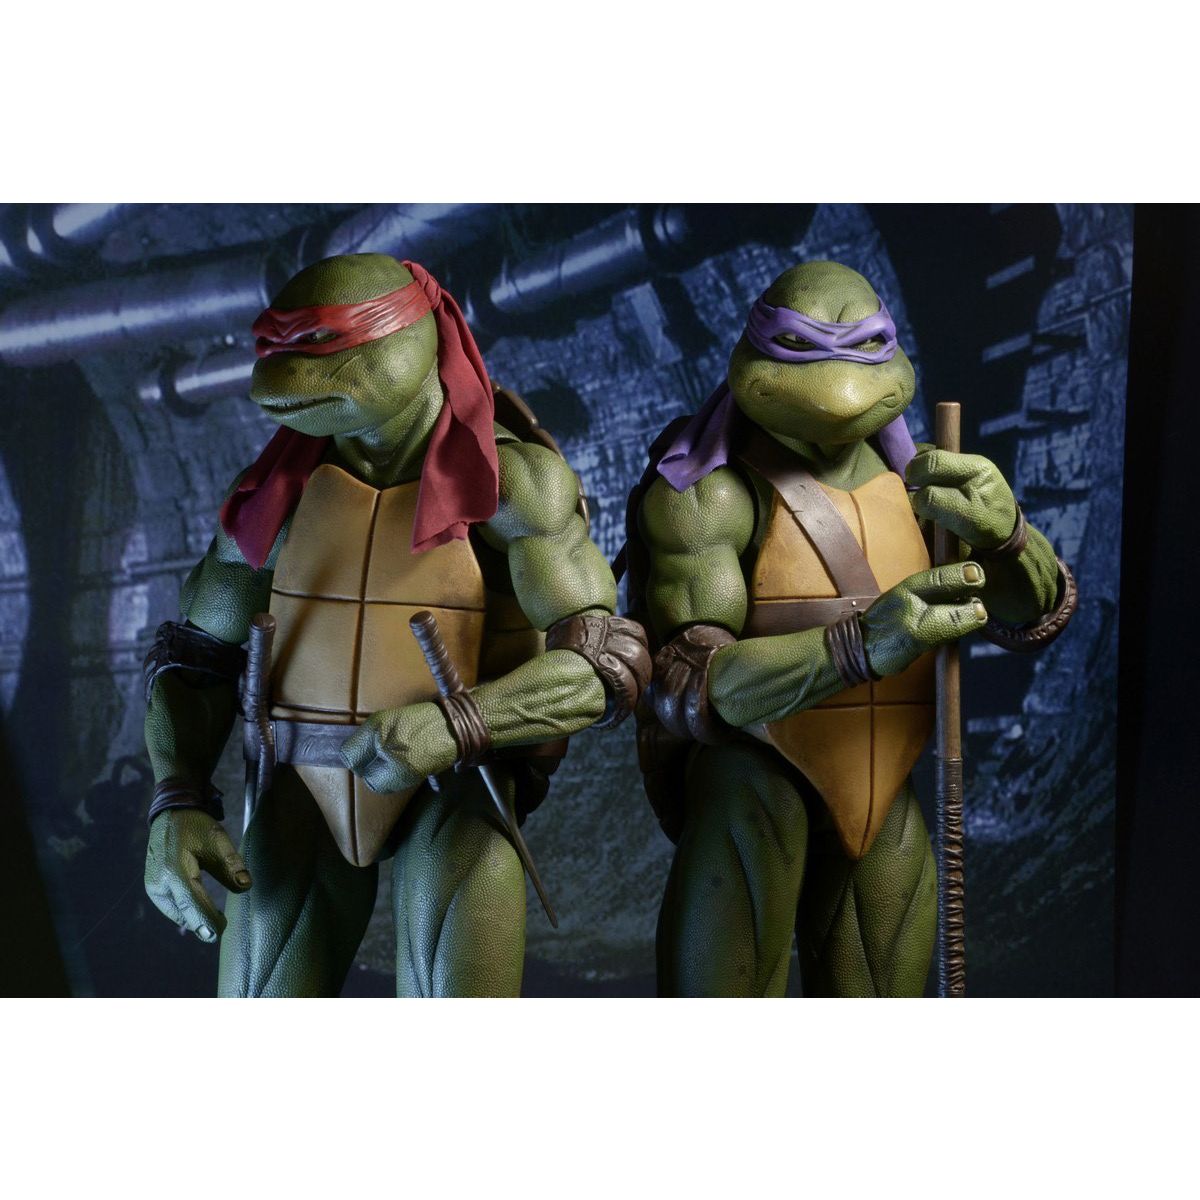 اکشن فیگور نکا مدل لاکپشت های نینجا طرح Turtle Ninja مجموعه 4 عددی -  - 8